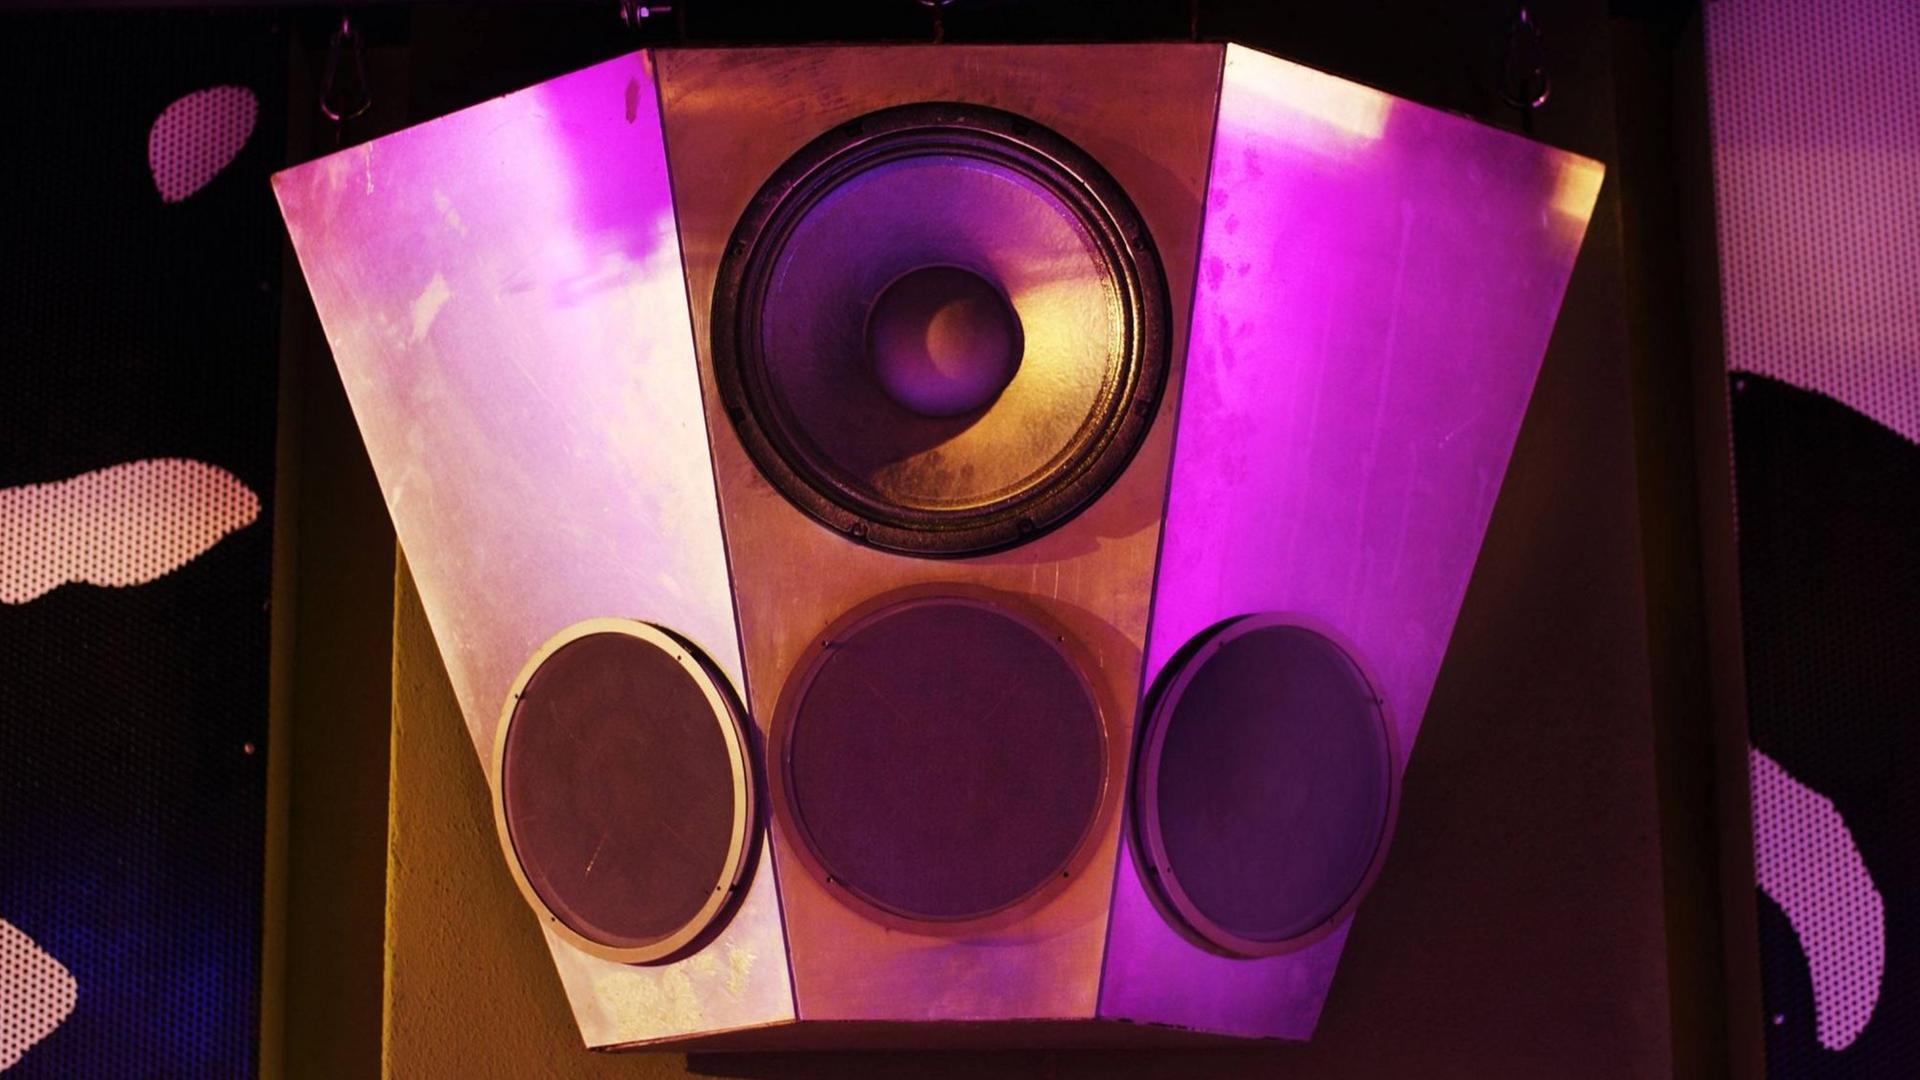 Eine Lautsprecherbox hängt in einer Disco und wird durch das Licht leicht lilafarben angestrahlt